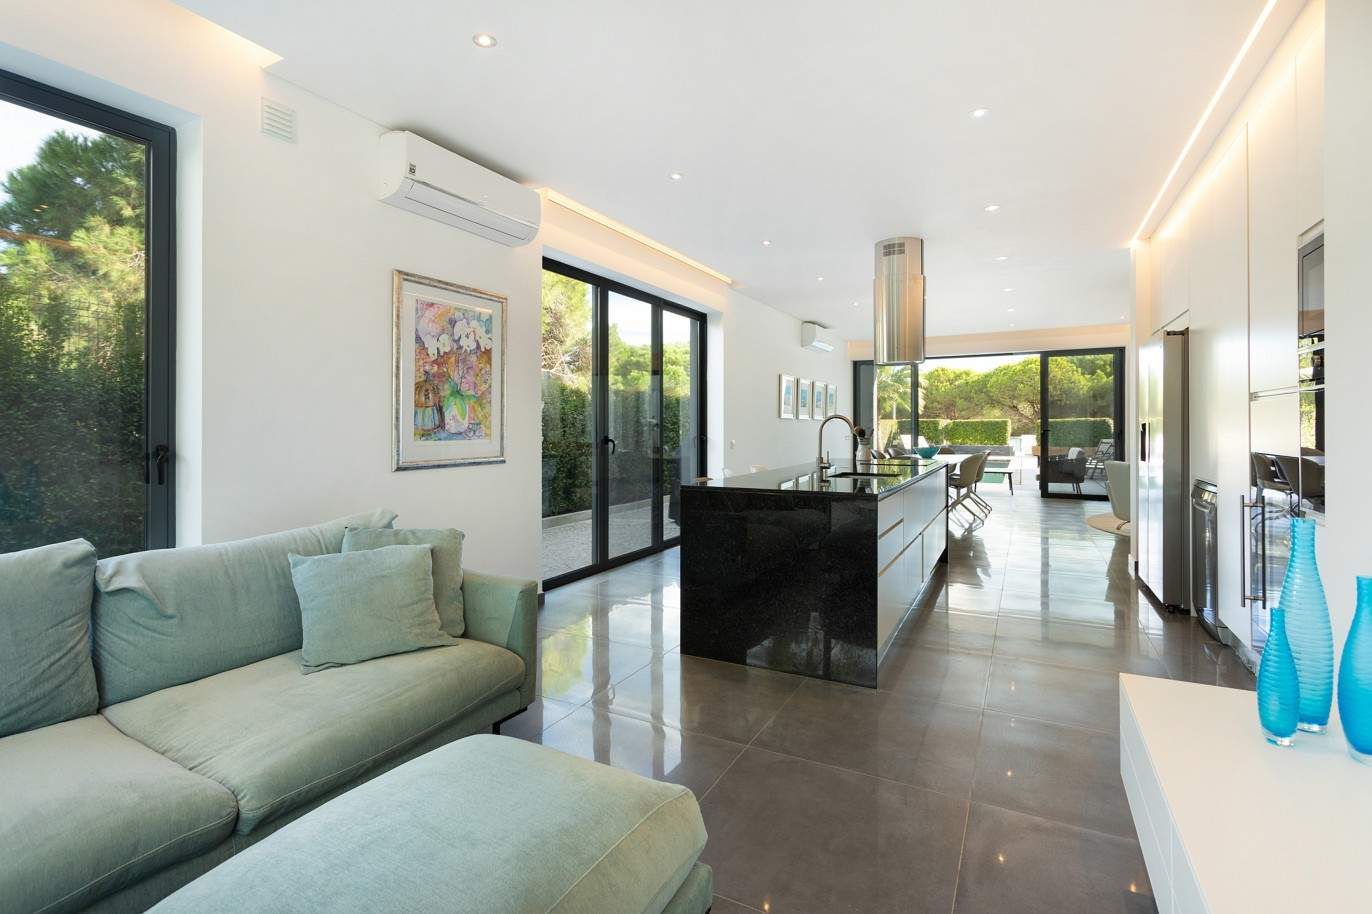 4 Bedroom Villa with swimming pool for sale in Vale do Lobo, Algarve_211190